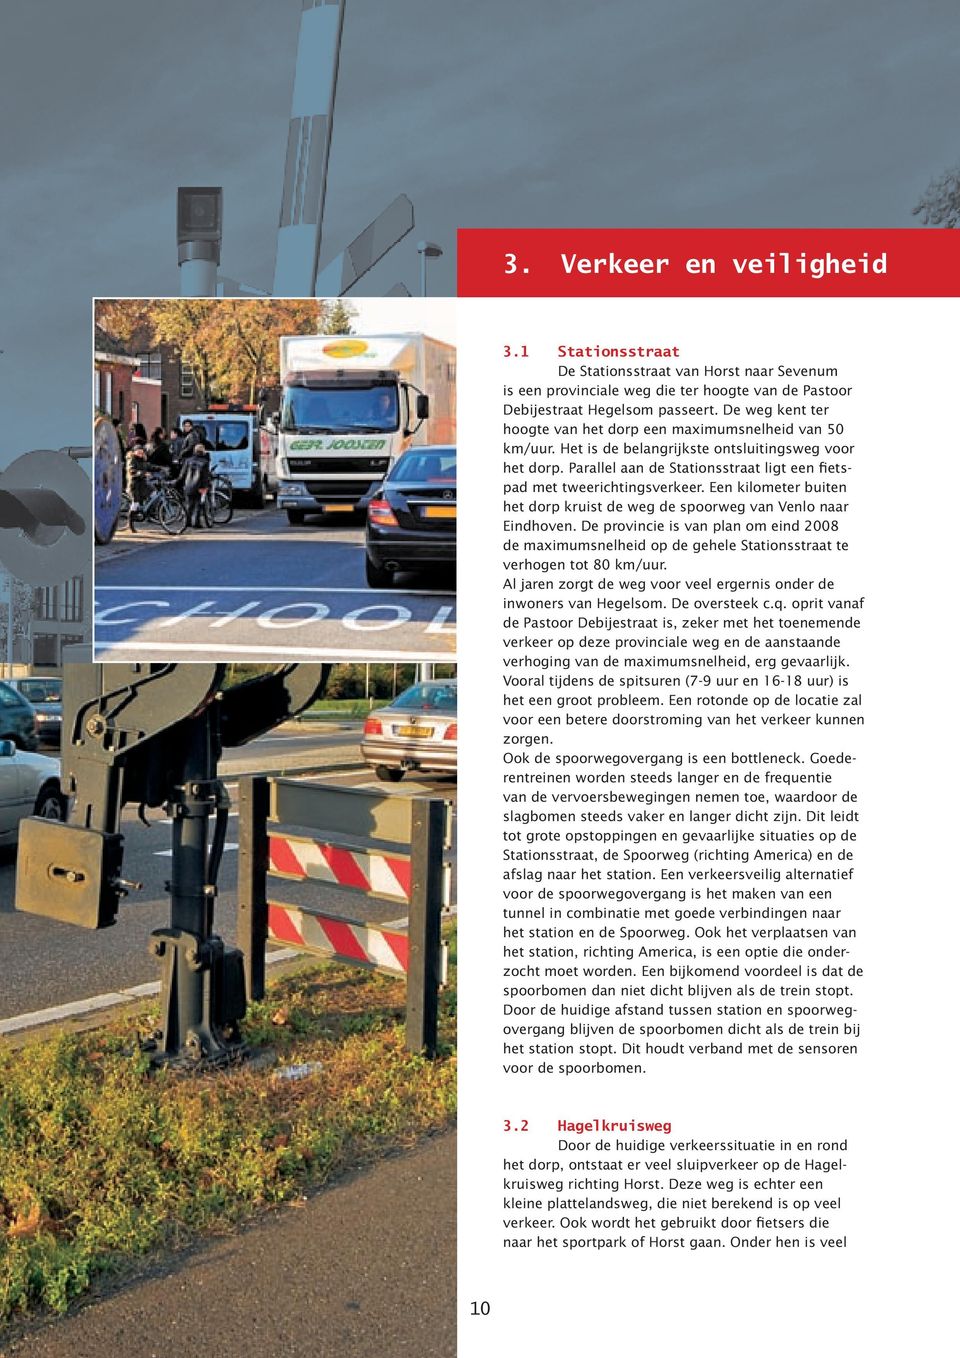 Een kilometer buiten het dorp kruist de weg de spoorweg van Venlo naar Eindhoven. De provincie is van plan om eind 2008 de maximumsnelheid op de gehele Stationsstraat te verhogen tot 80 km/uur.